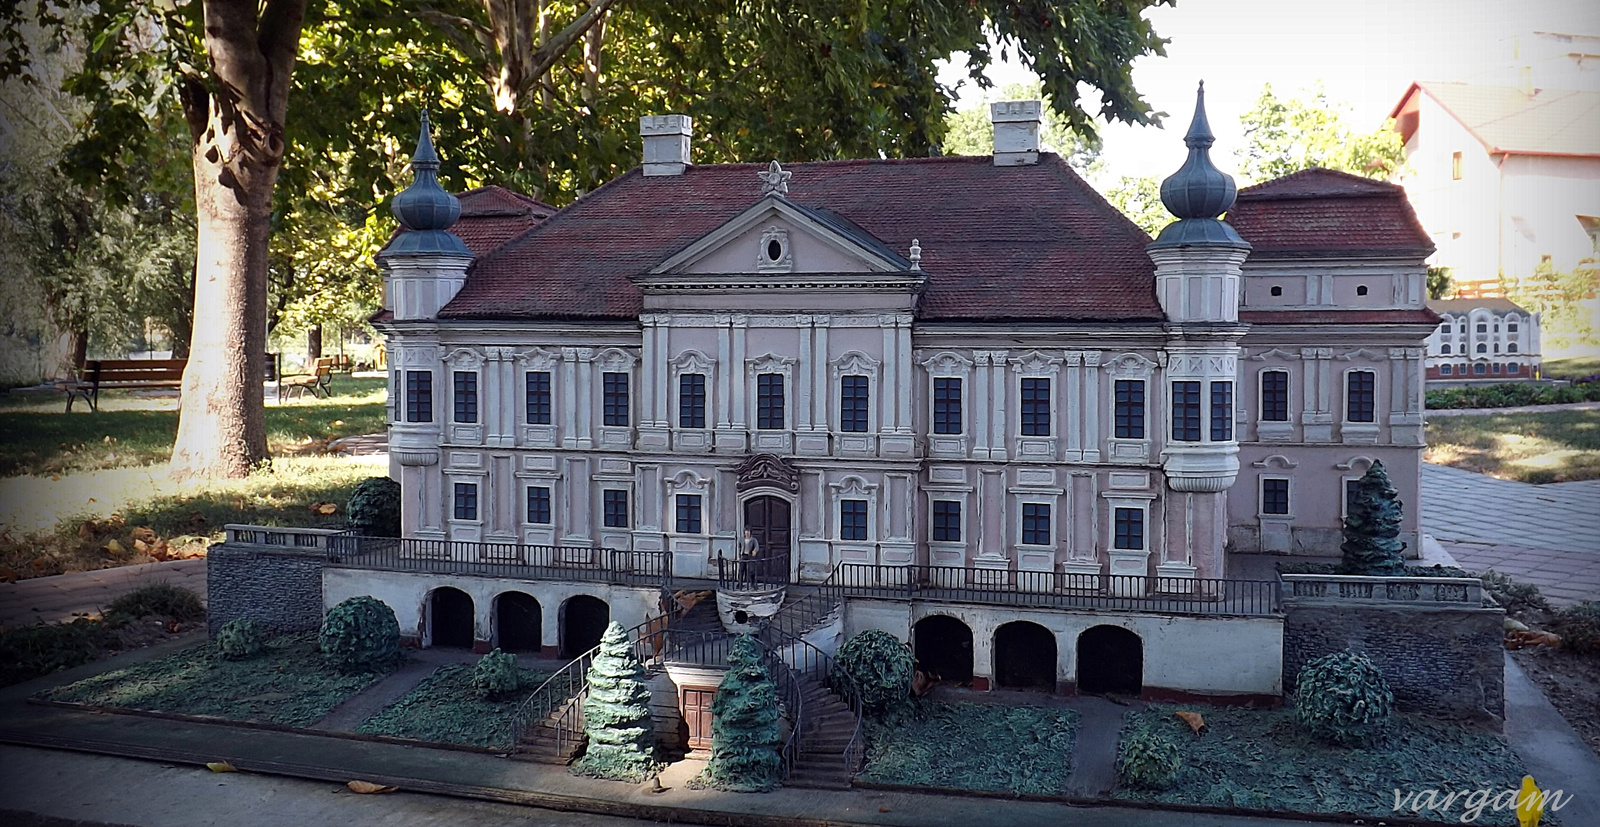 Kisbér Mini Magyarország - Sziráki kastély maketttje